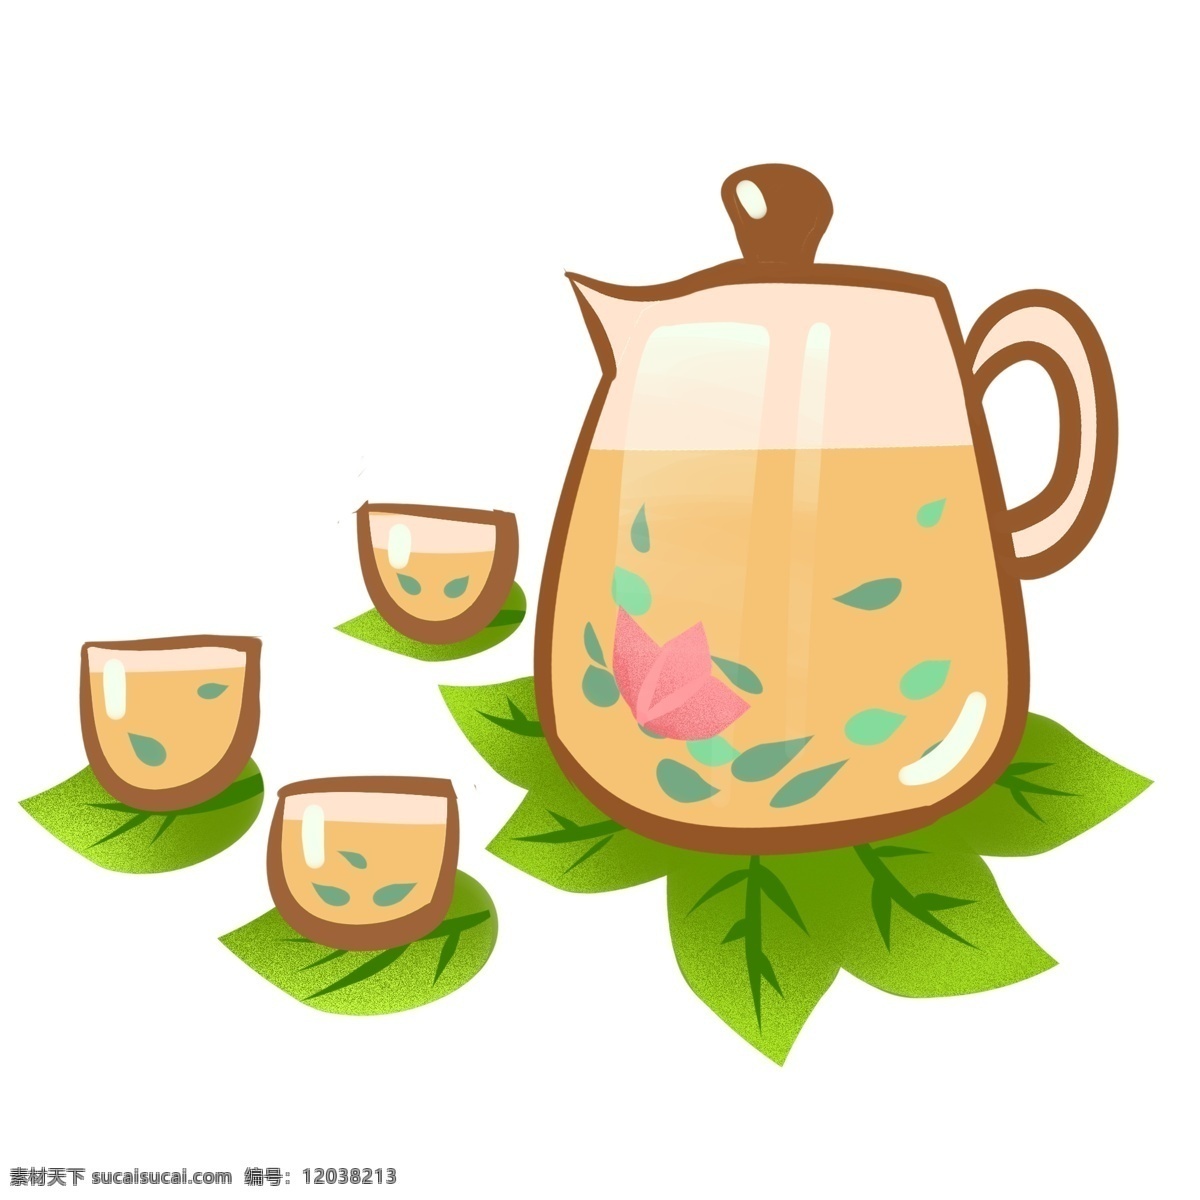 清明节 手绘 茶具 茶杯 饮茶 免 扣 茶壶 茶叶 节日 花茶 下午茶 饮品 夏天 棕色 浸泡 传统